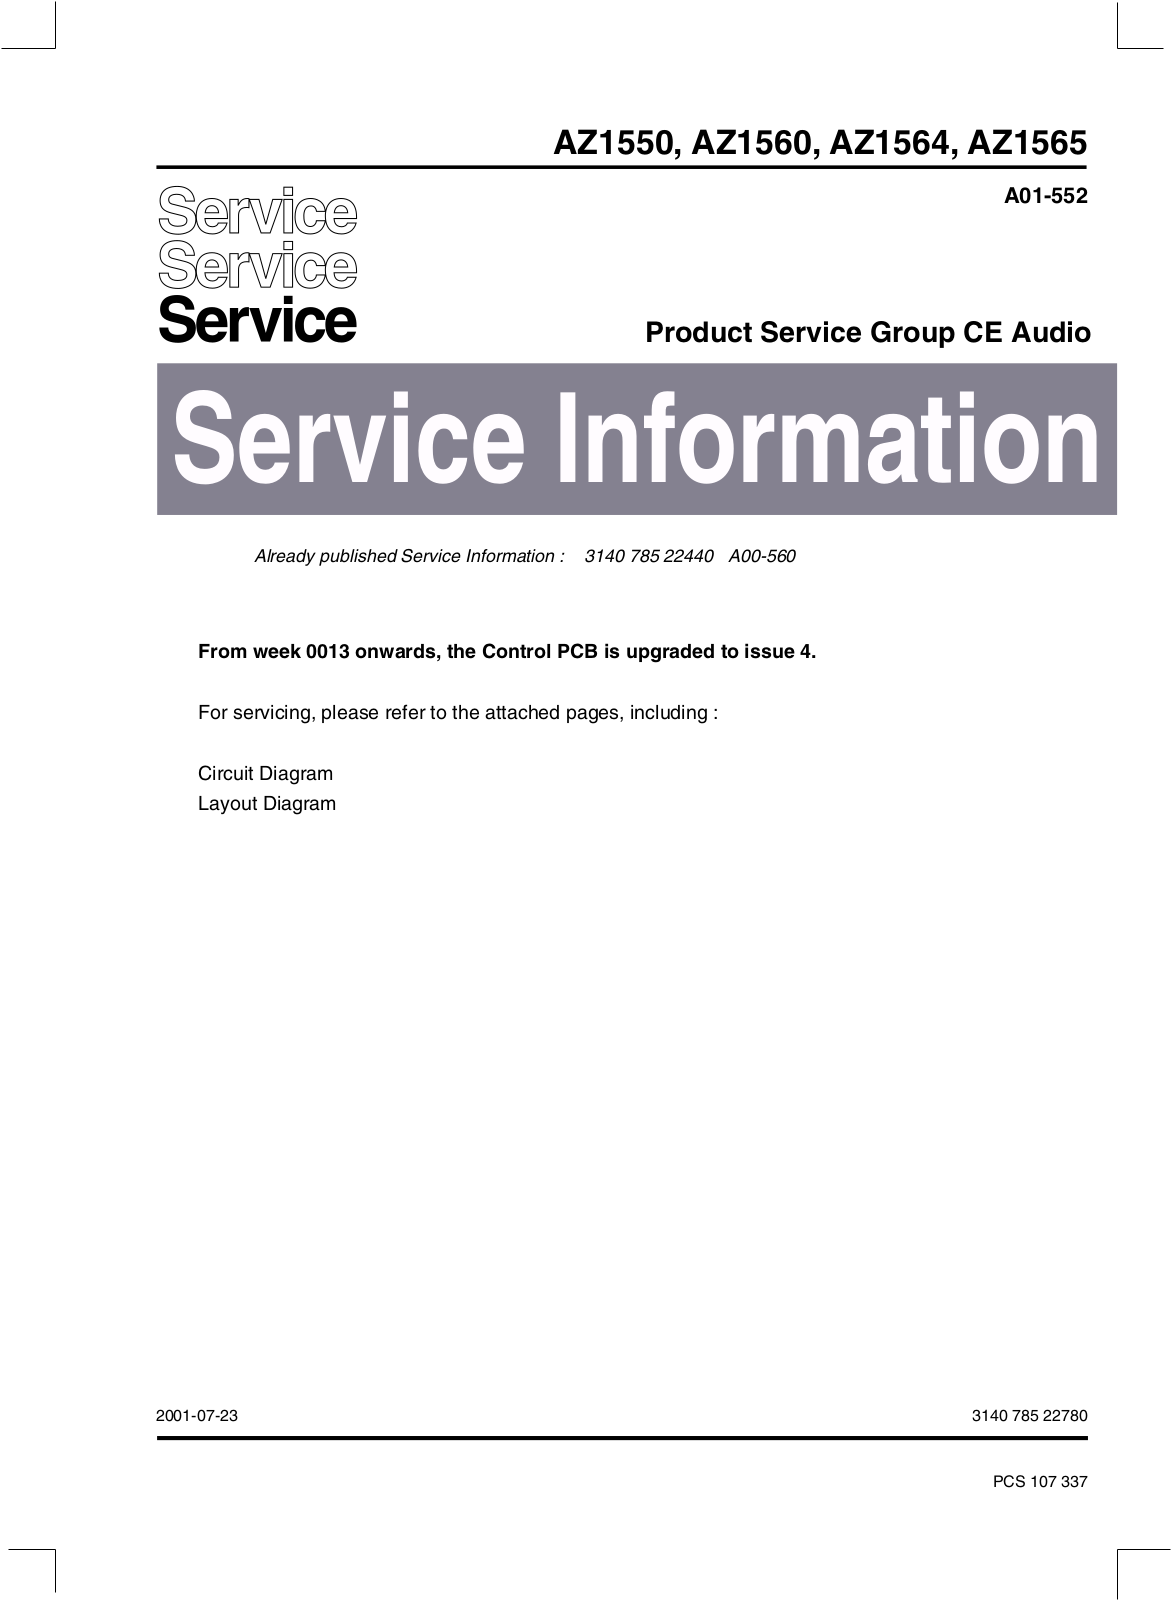 Philips AZ1550, AZ1560, AZ1564, AZ1565 Service Manual